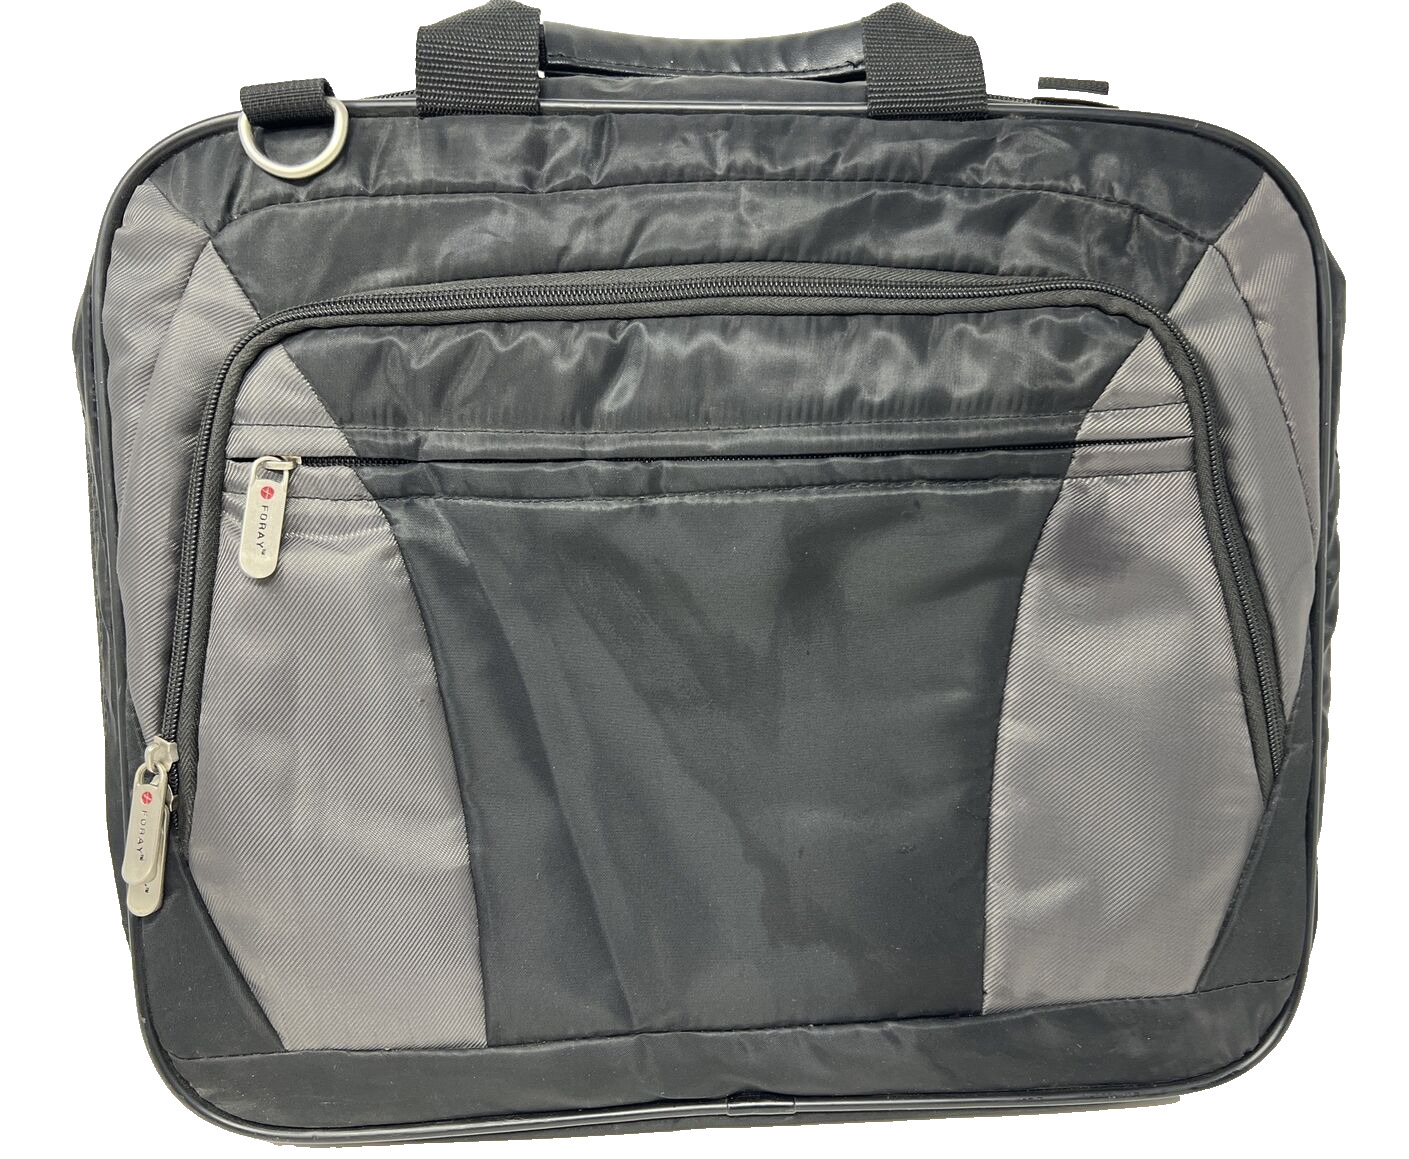 Foray Black Laptop Shoulder Bag Business Soft Briefcase Case Gray Black